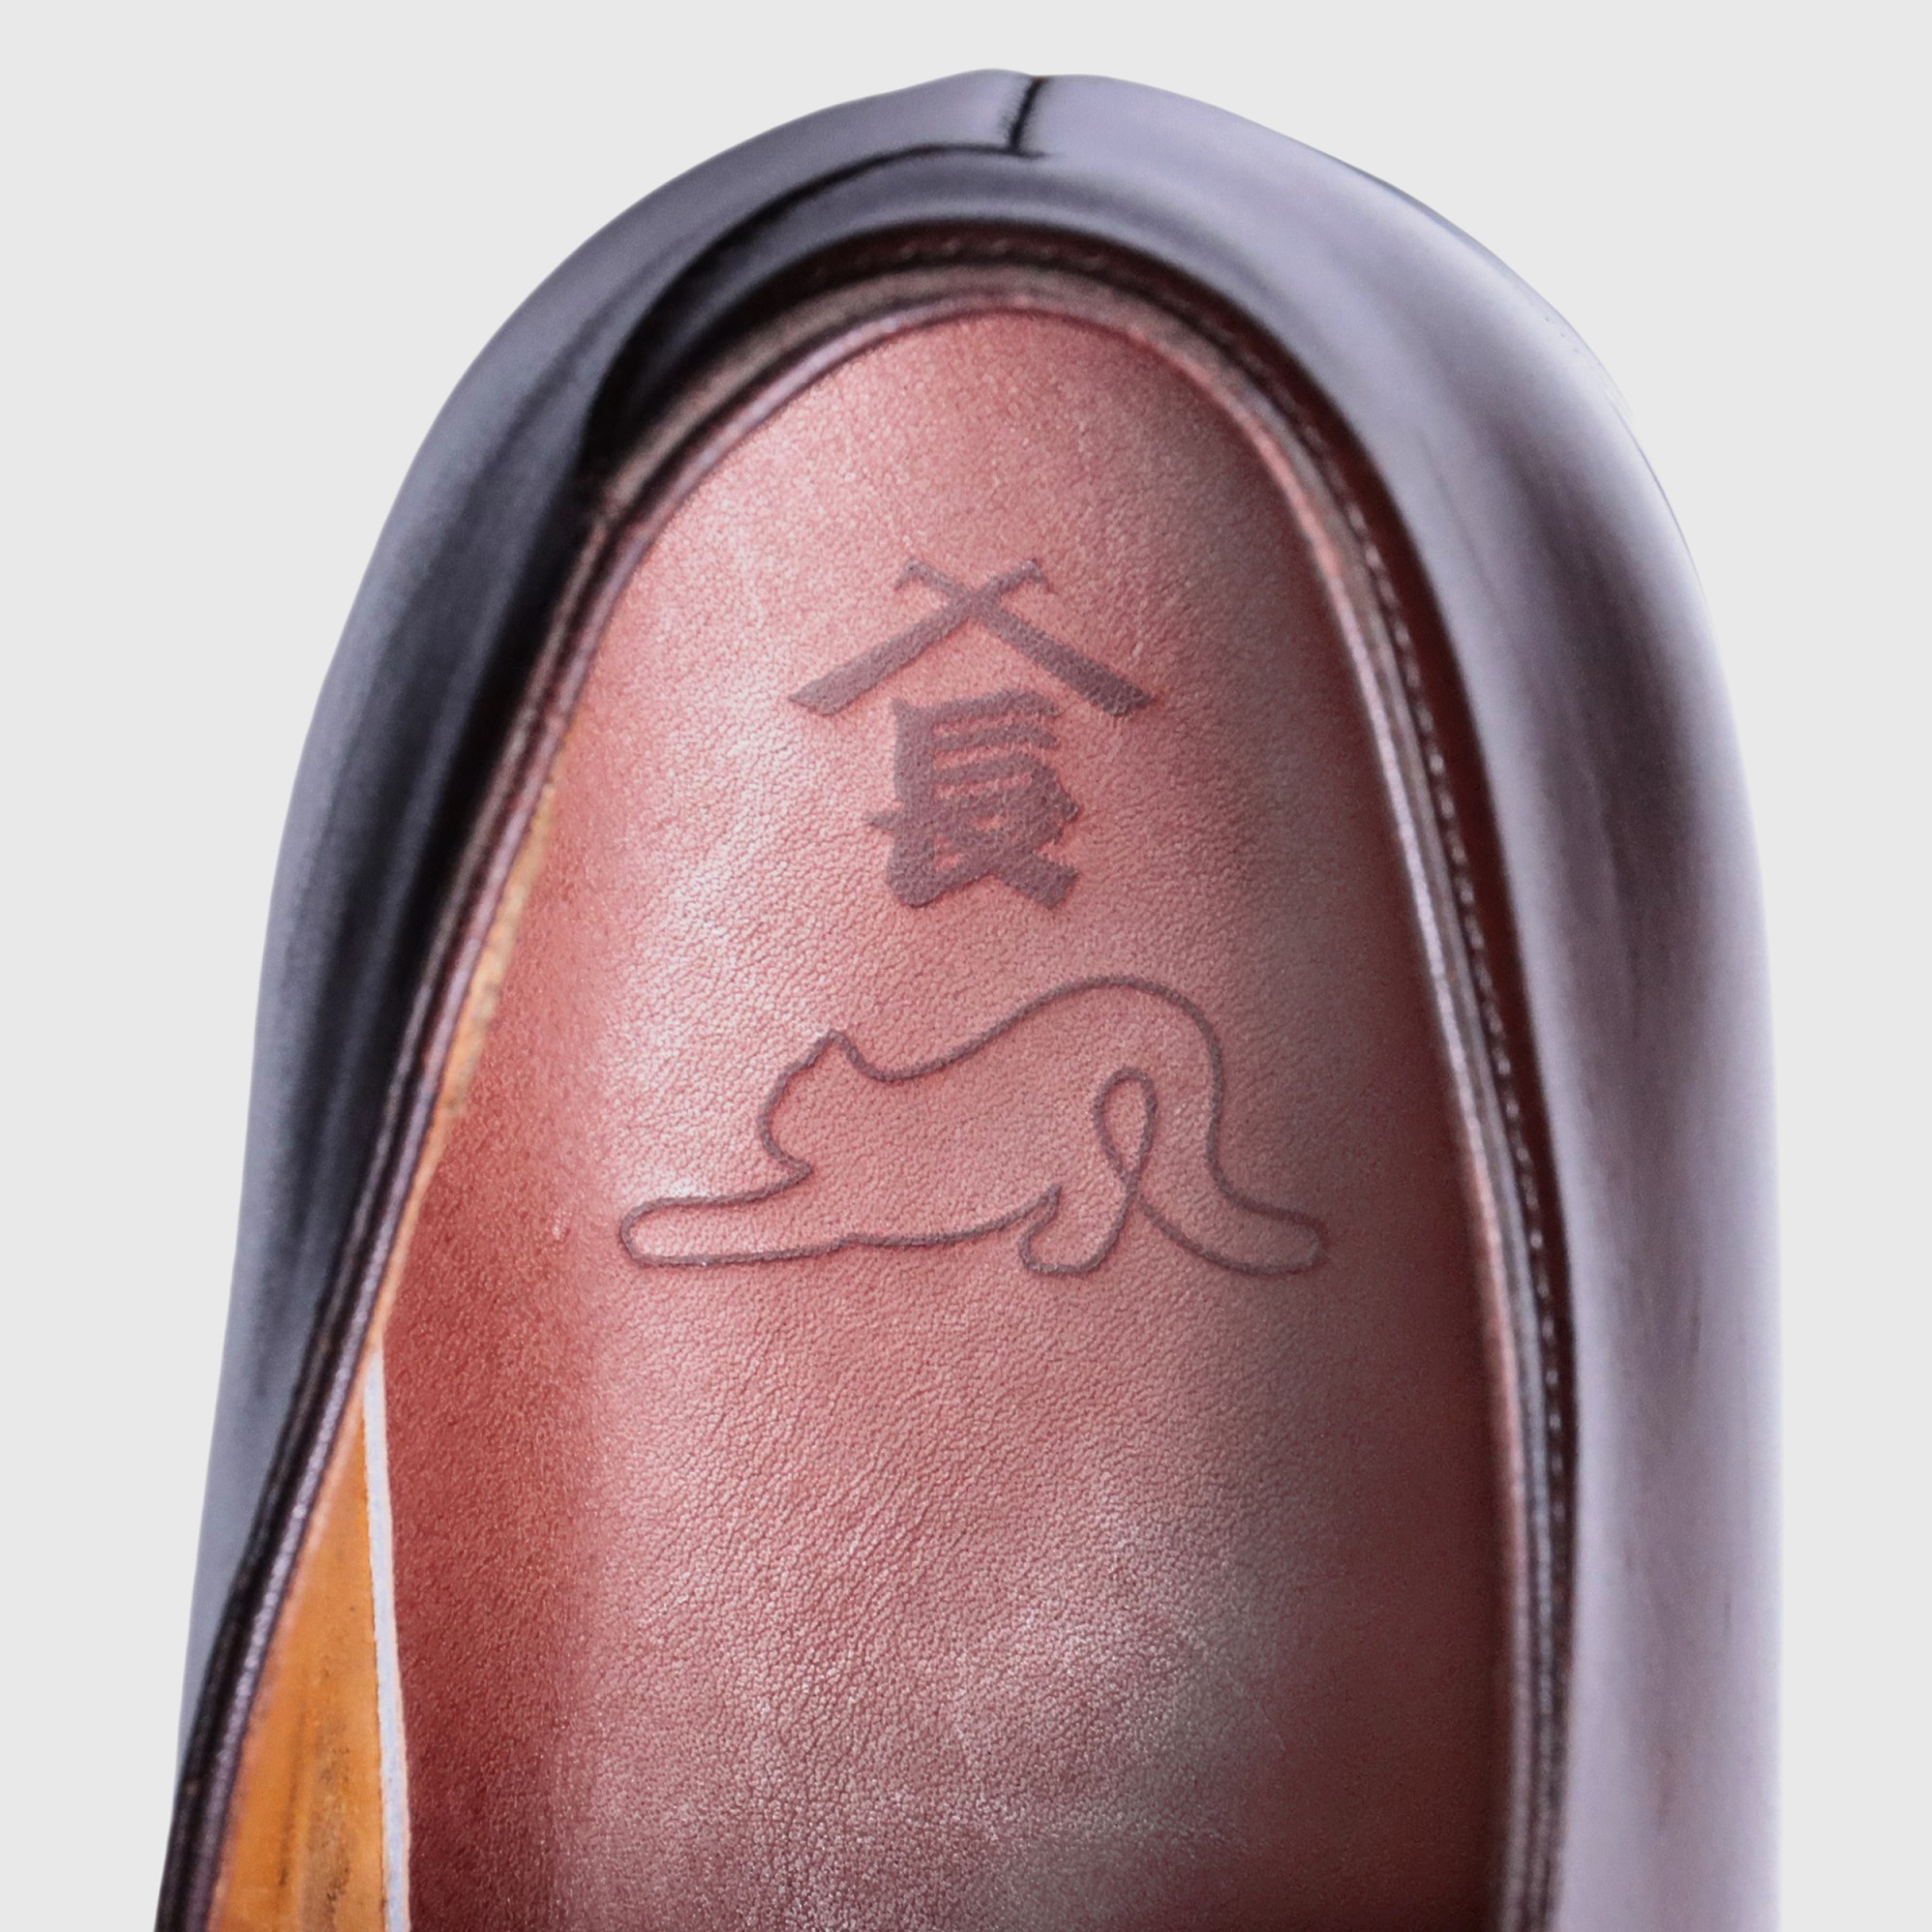 三陽山長が寄付により集まった革靴を修理し、“認定中古靴”として8月17日より販売スタート